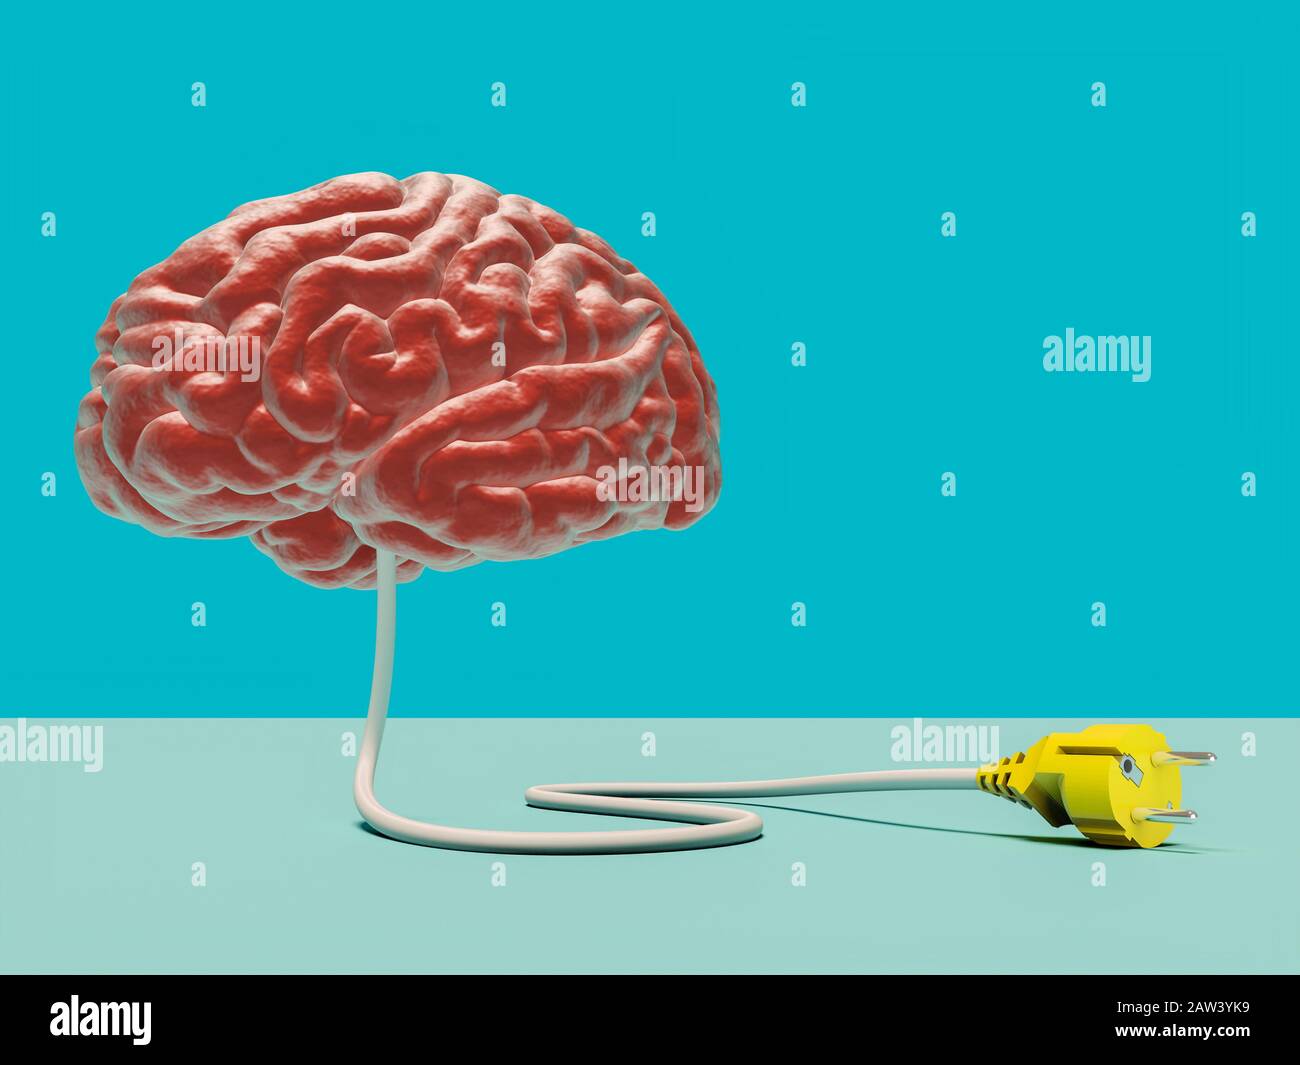 Konzeptionelles 3D-Renderbild eines Gehirns mit einem Draht und einem abgelösten Stecker. Konzept der kollektiven Intelligenz und Desinformation. Stockfoto